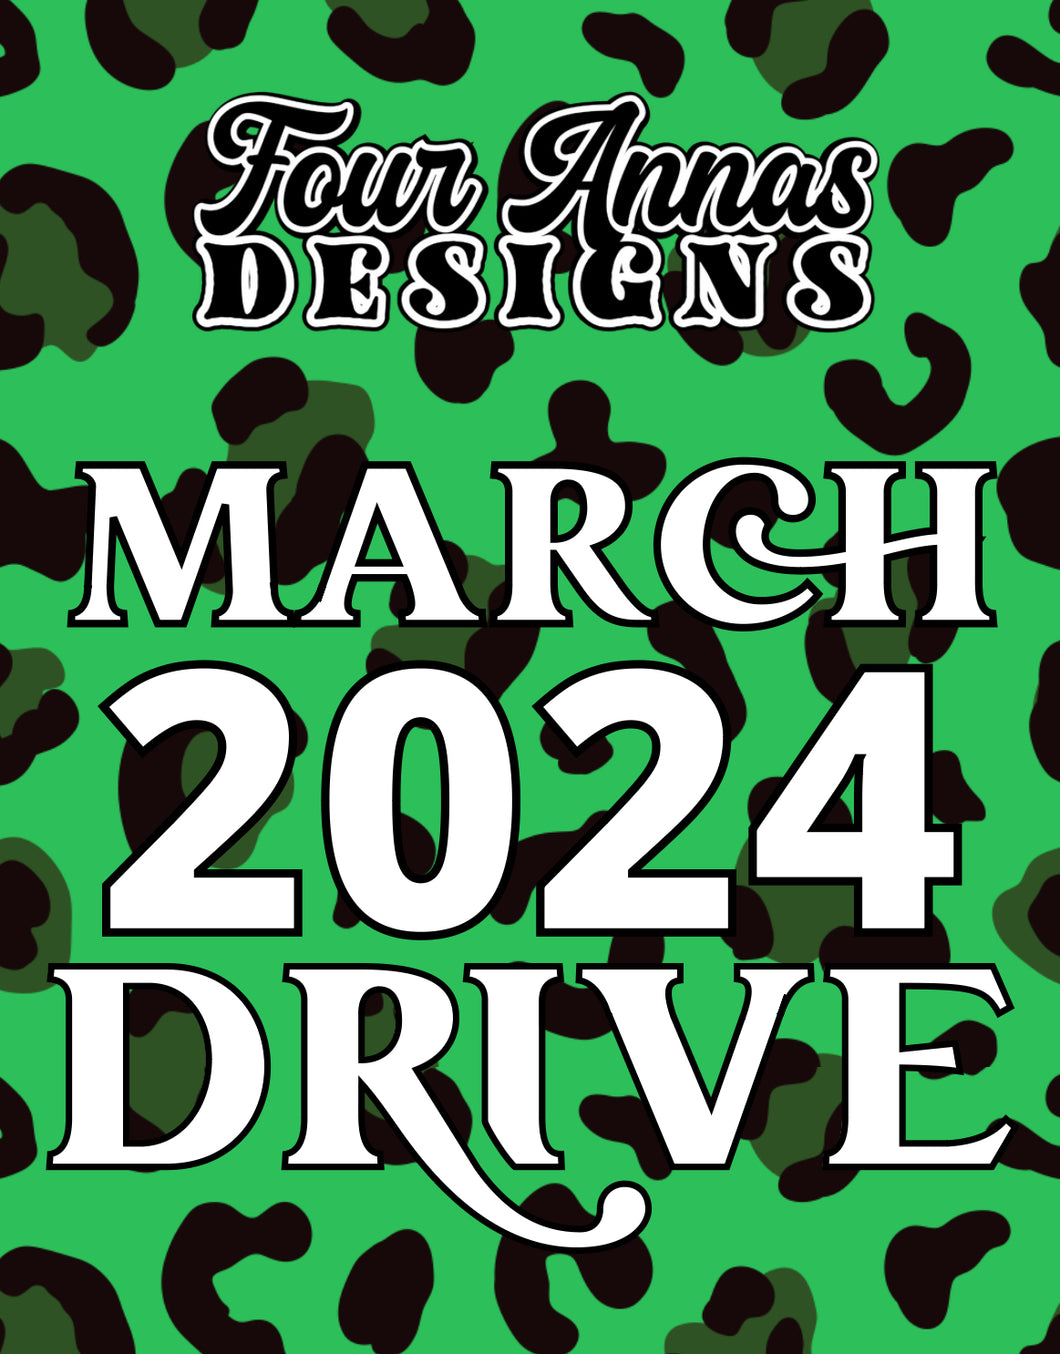 March 2024 Design Drive